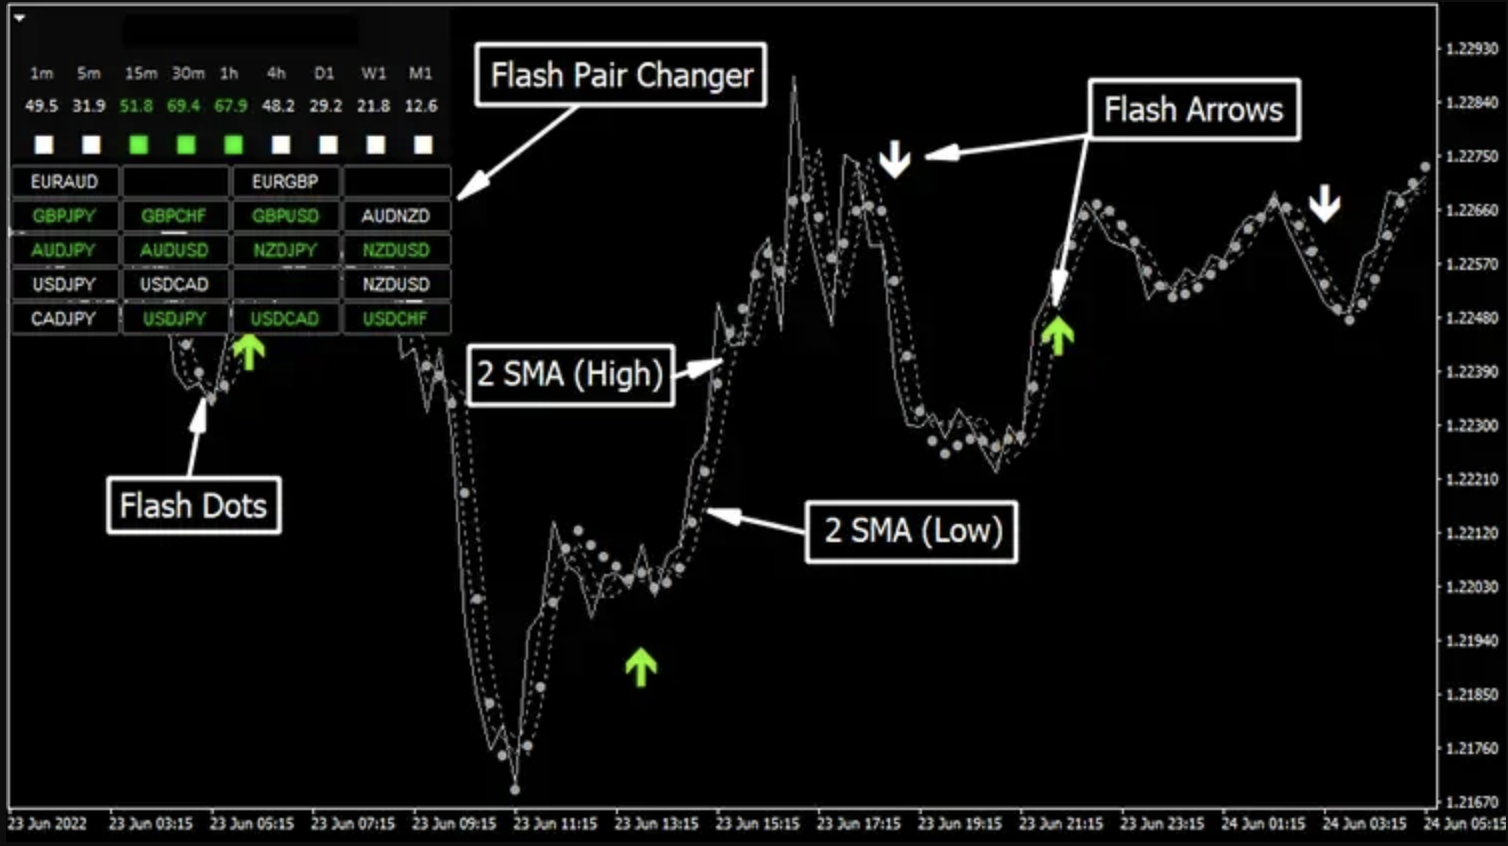 Giới thiệu Hệ thống giao dịch Scalping Flash FX với bộ indicator được lập trình sẵn đính kèm